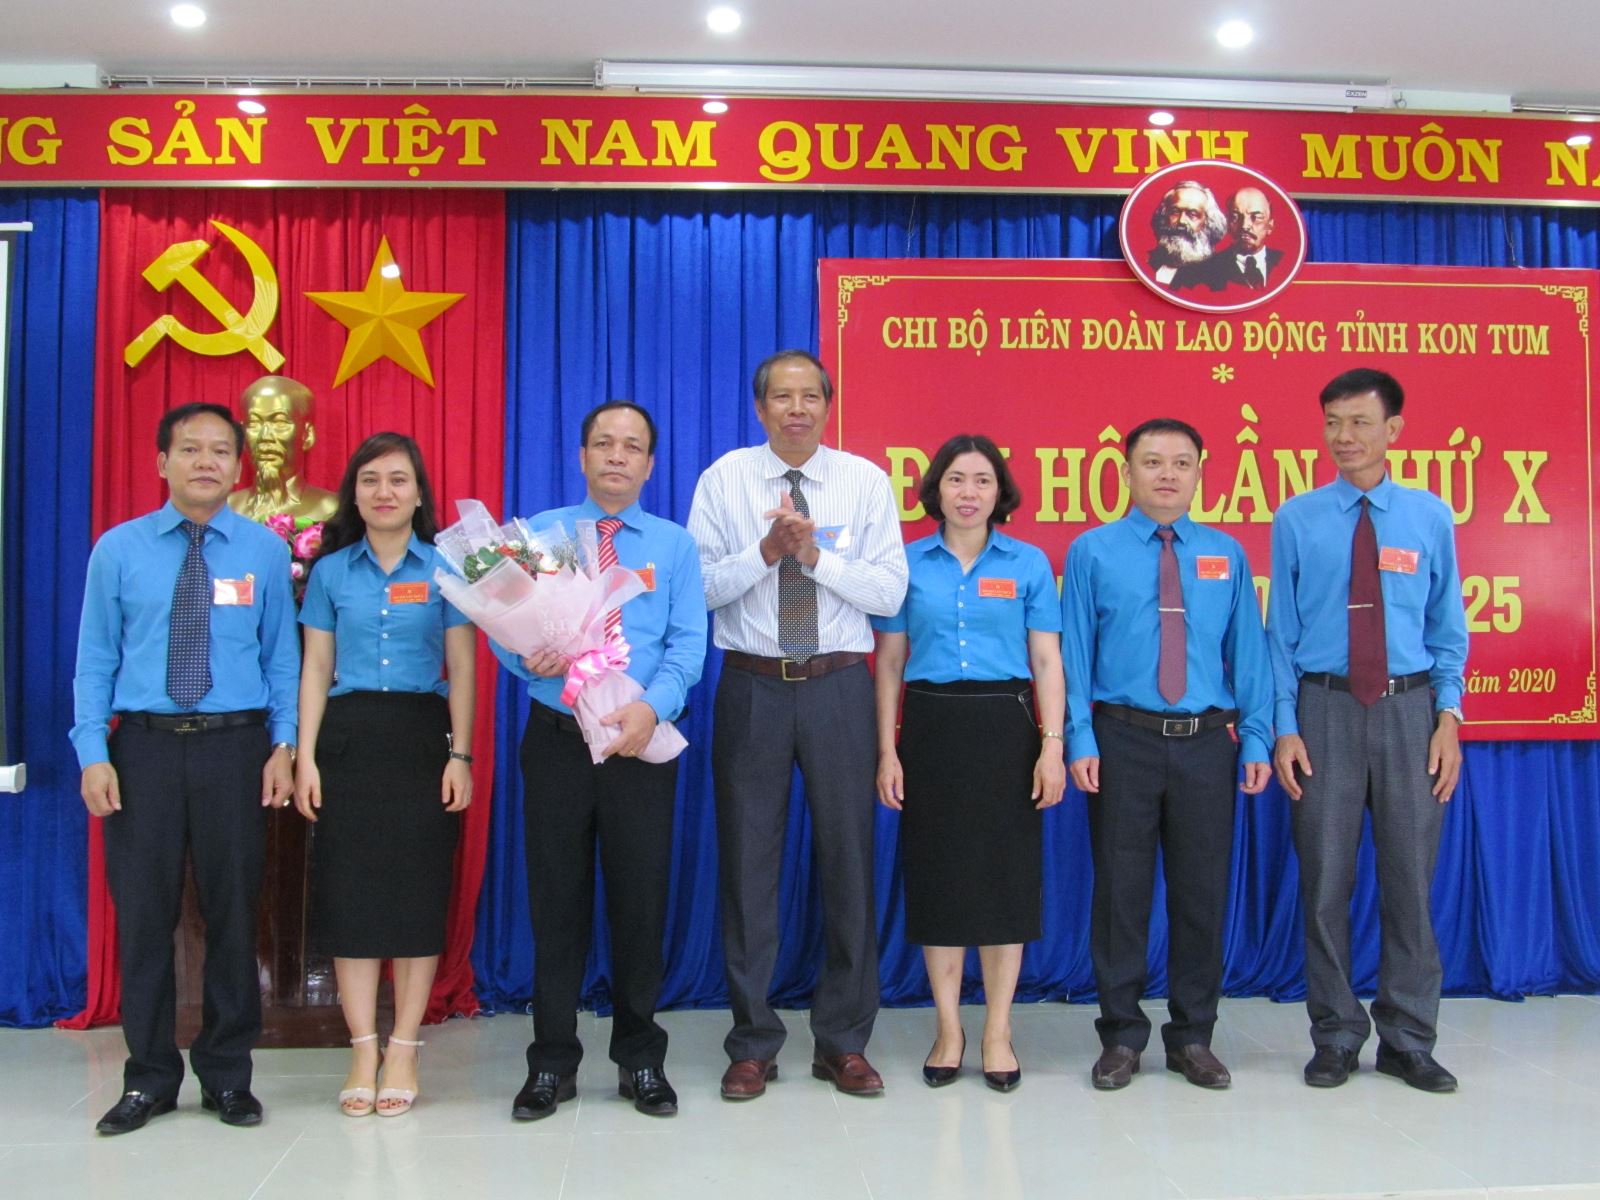 Chi bộ Liên đoàn Lao động tỉnh Kon Tum: Nâng cao năng lực và sức chiến đấu, dân chủ, đoàn kết, xây dựng Chi bộ trong sạch, vững mạnh